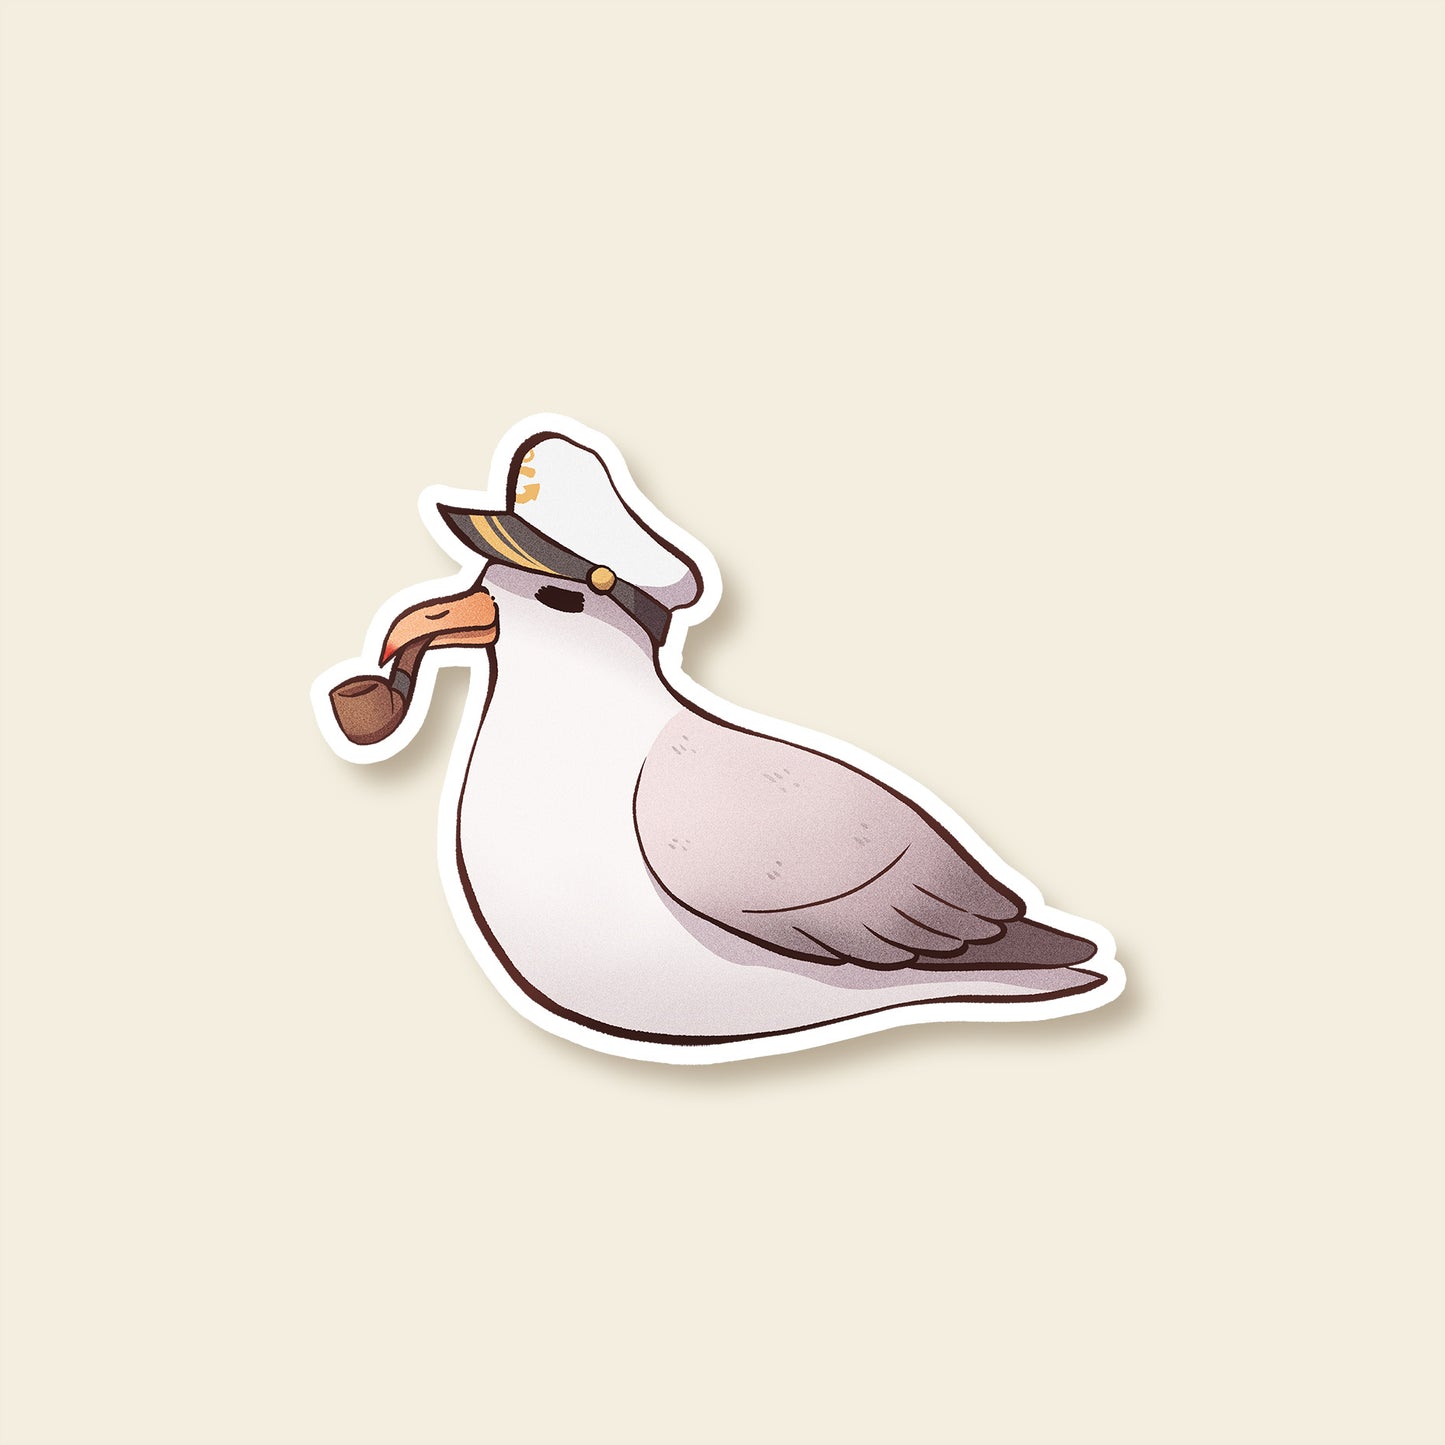 Seagull Captain - Sticker